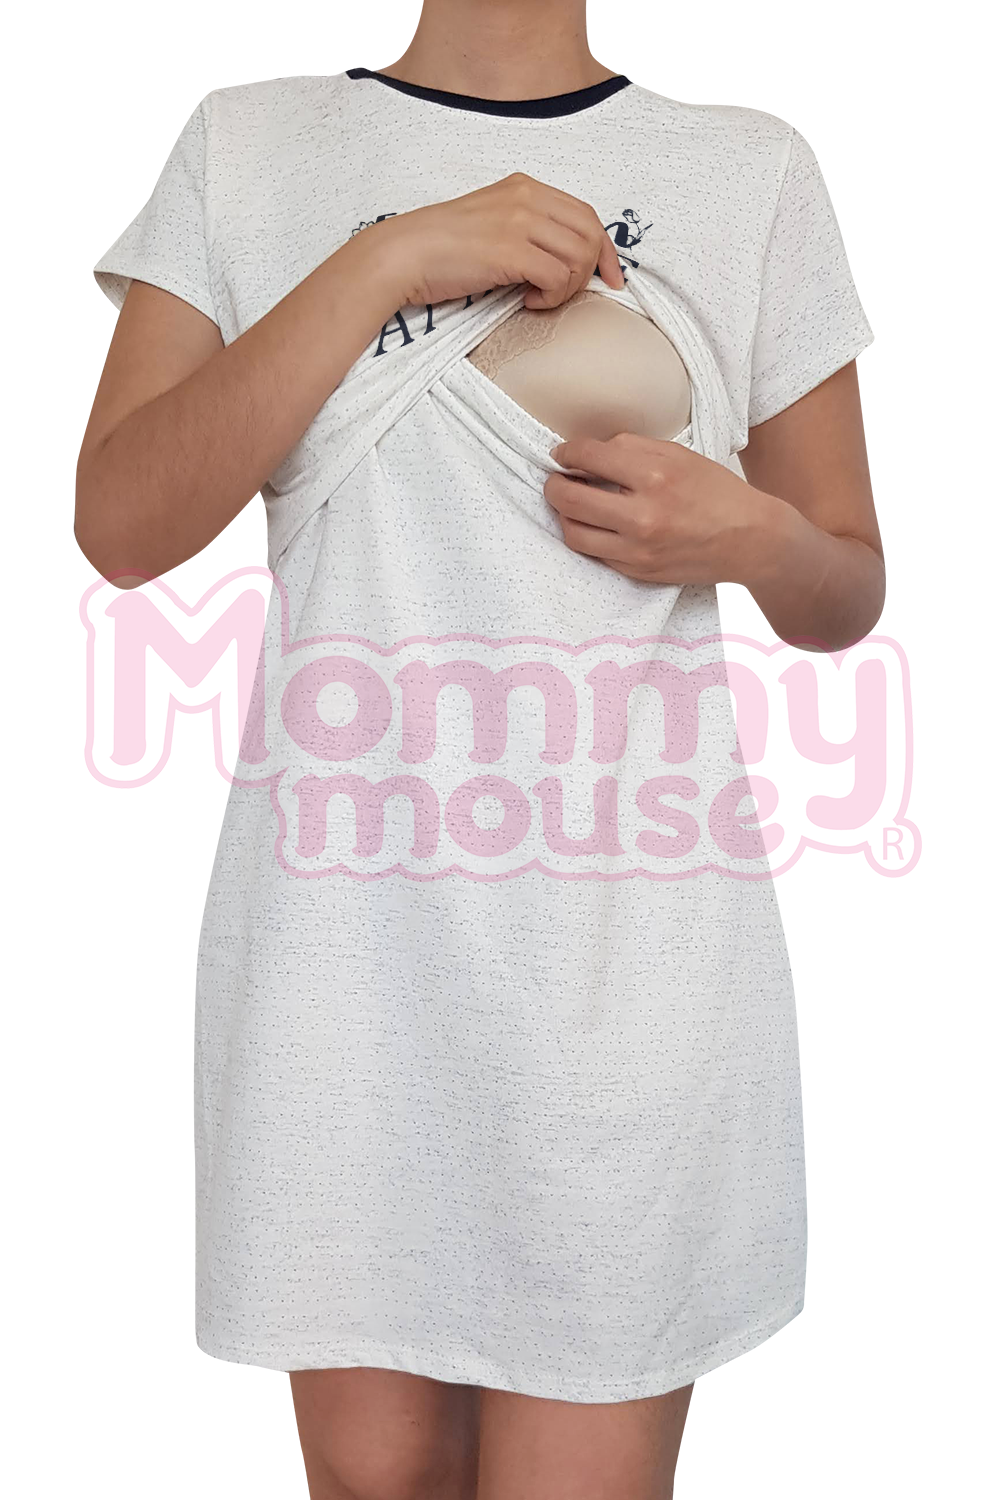 Camisón Pijama maternidad-lactancia. Fashion at home